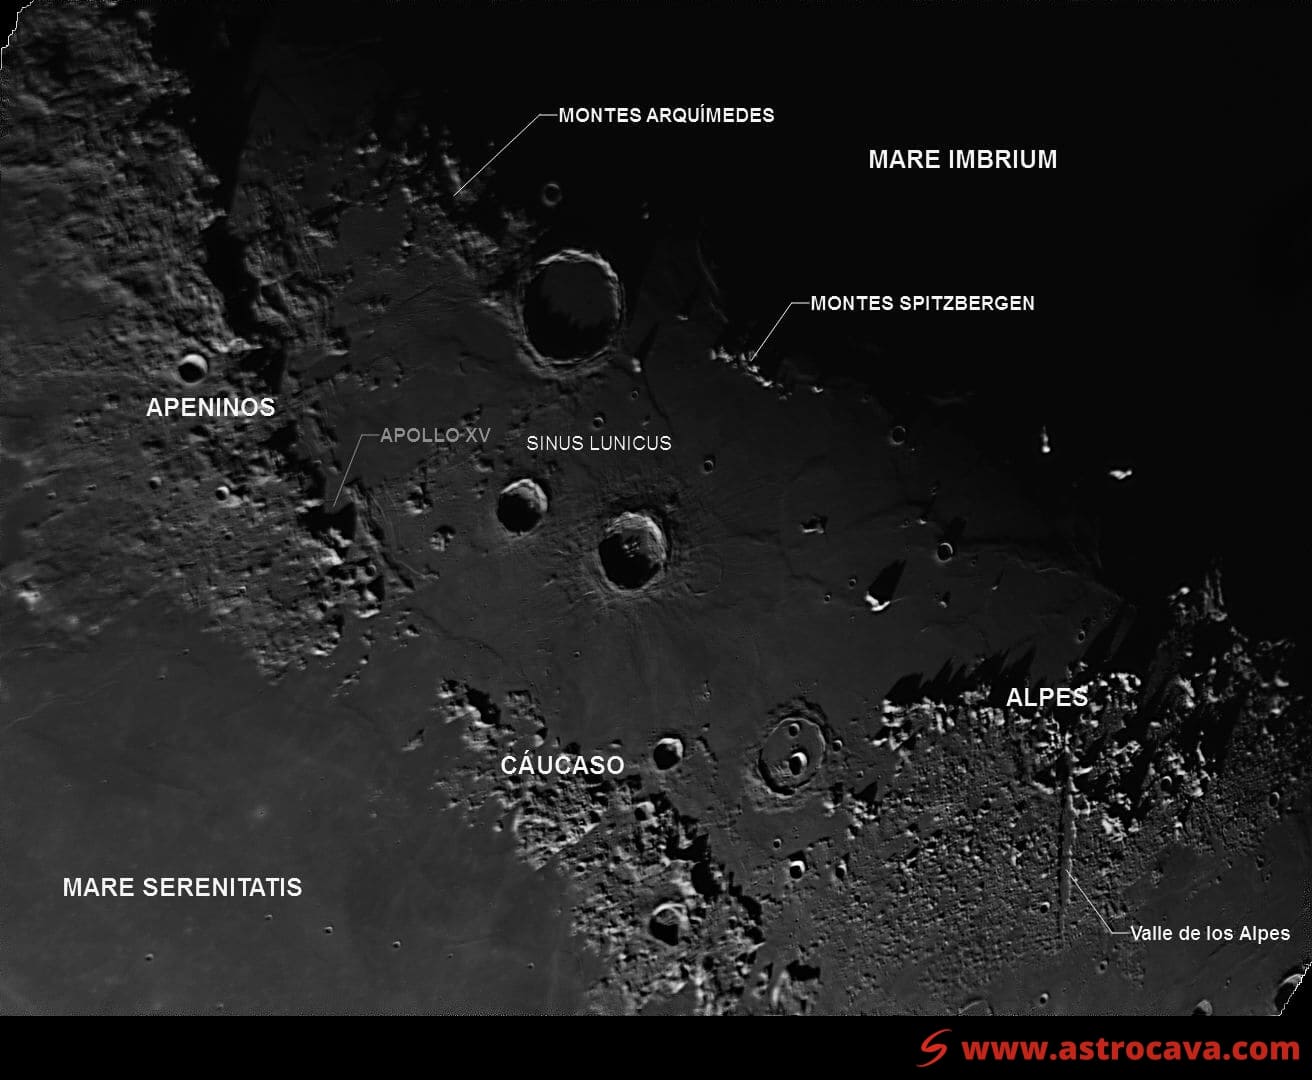 Zona de la Luna entre Mare Imbrium y Mare Serenitatis anotada